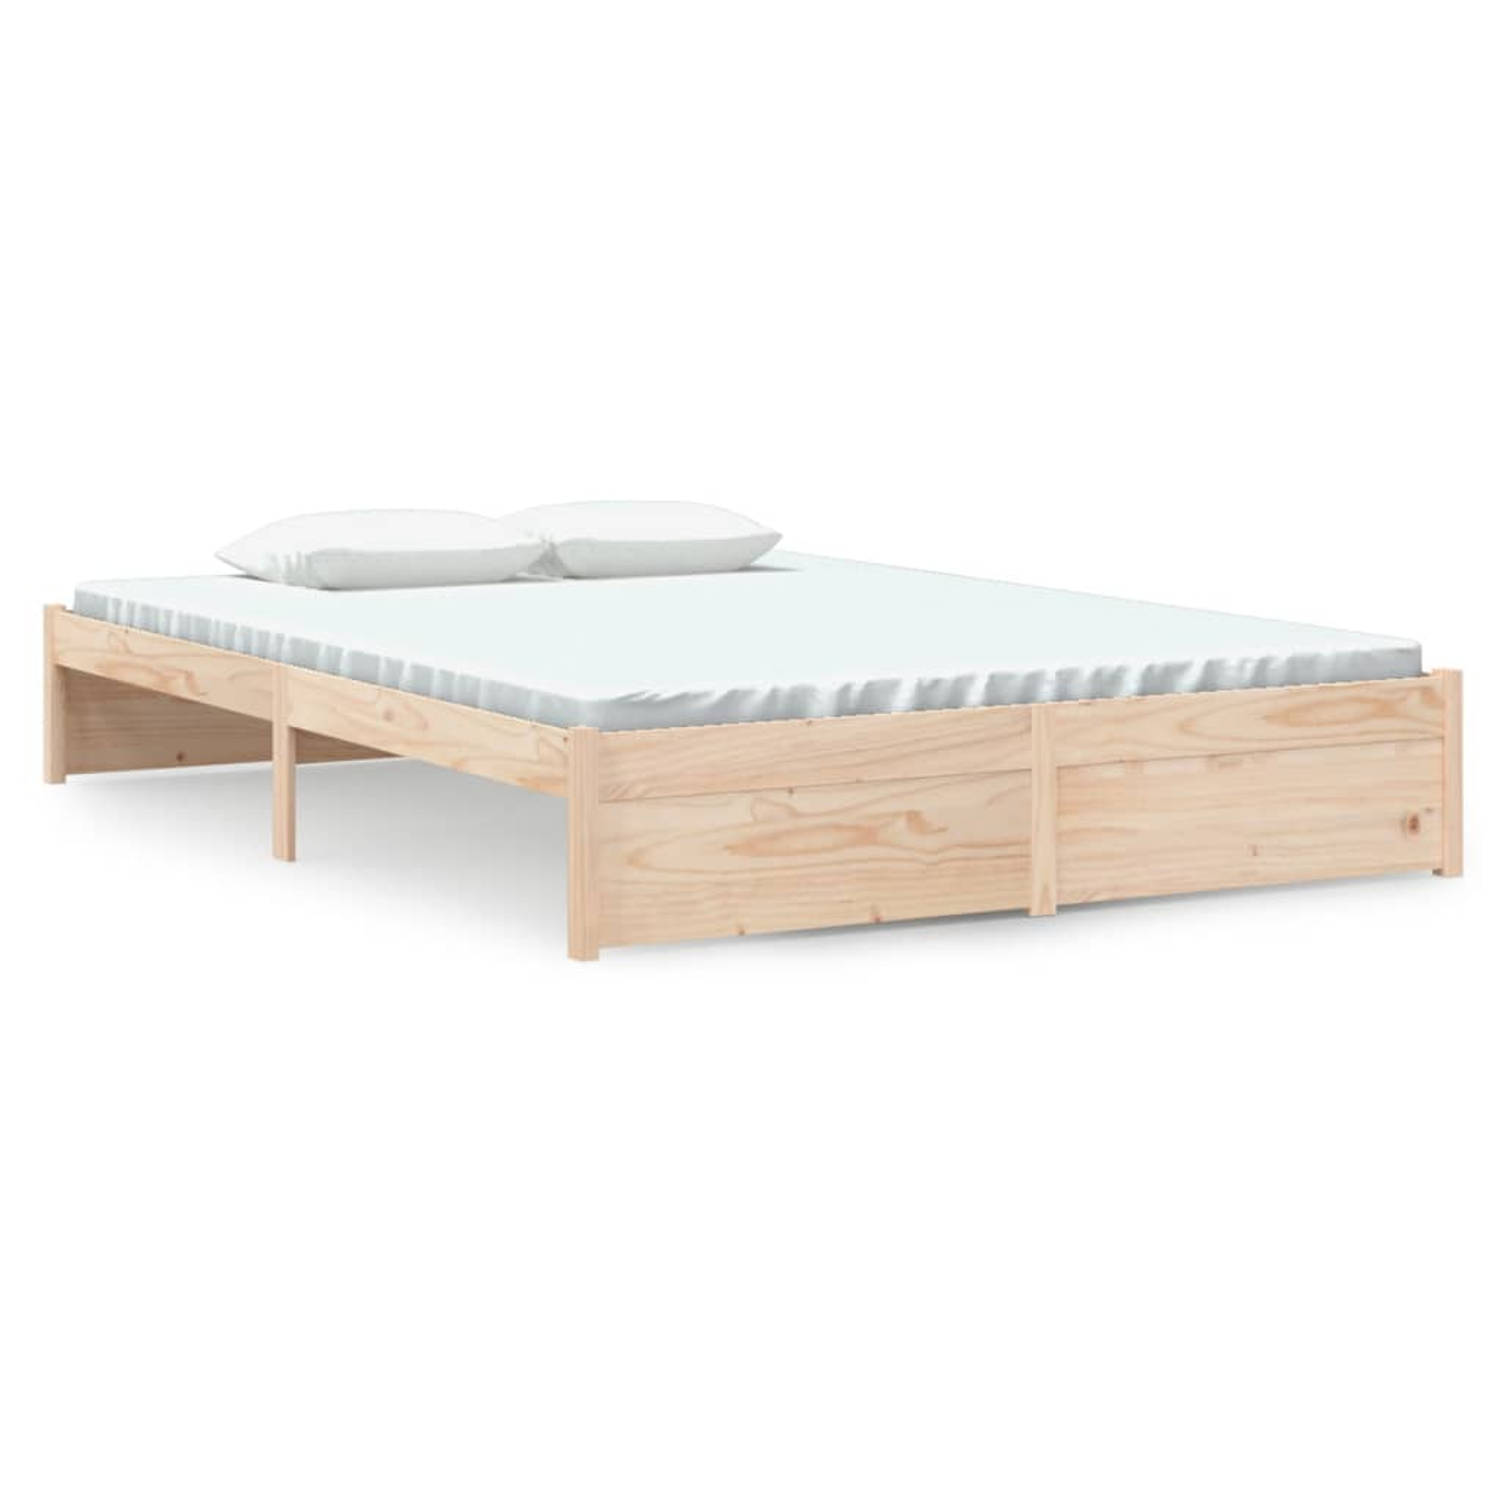 The Living Store Bedframe massief hout 140x200 cm - Bedframe - Bedframes - Bed - Bedbodem - Ledikant - Bed Frame - Massief Houten Bedframe - Slaapmeubel - Tweepersoonsbed - Bedden